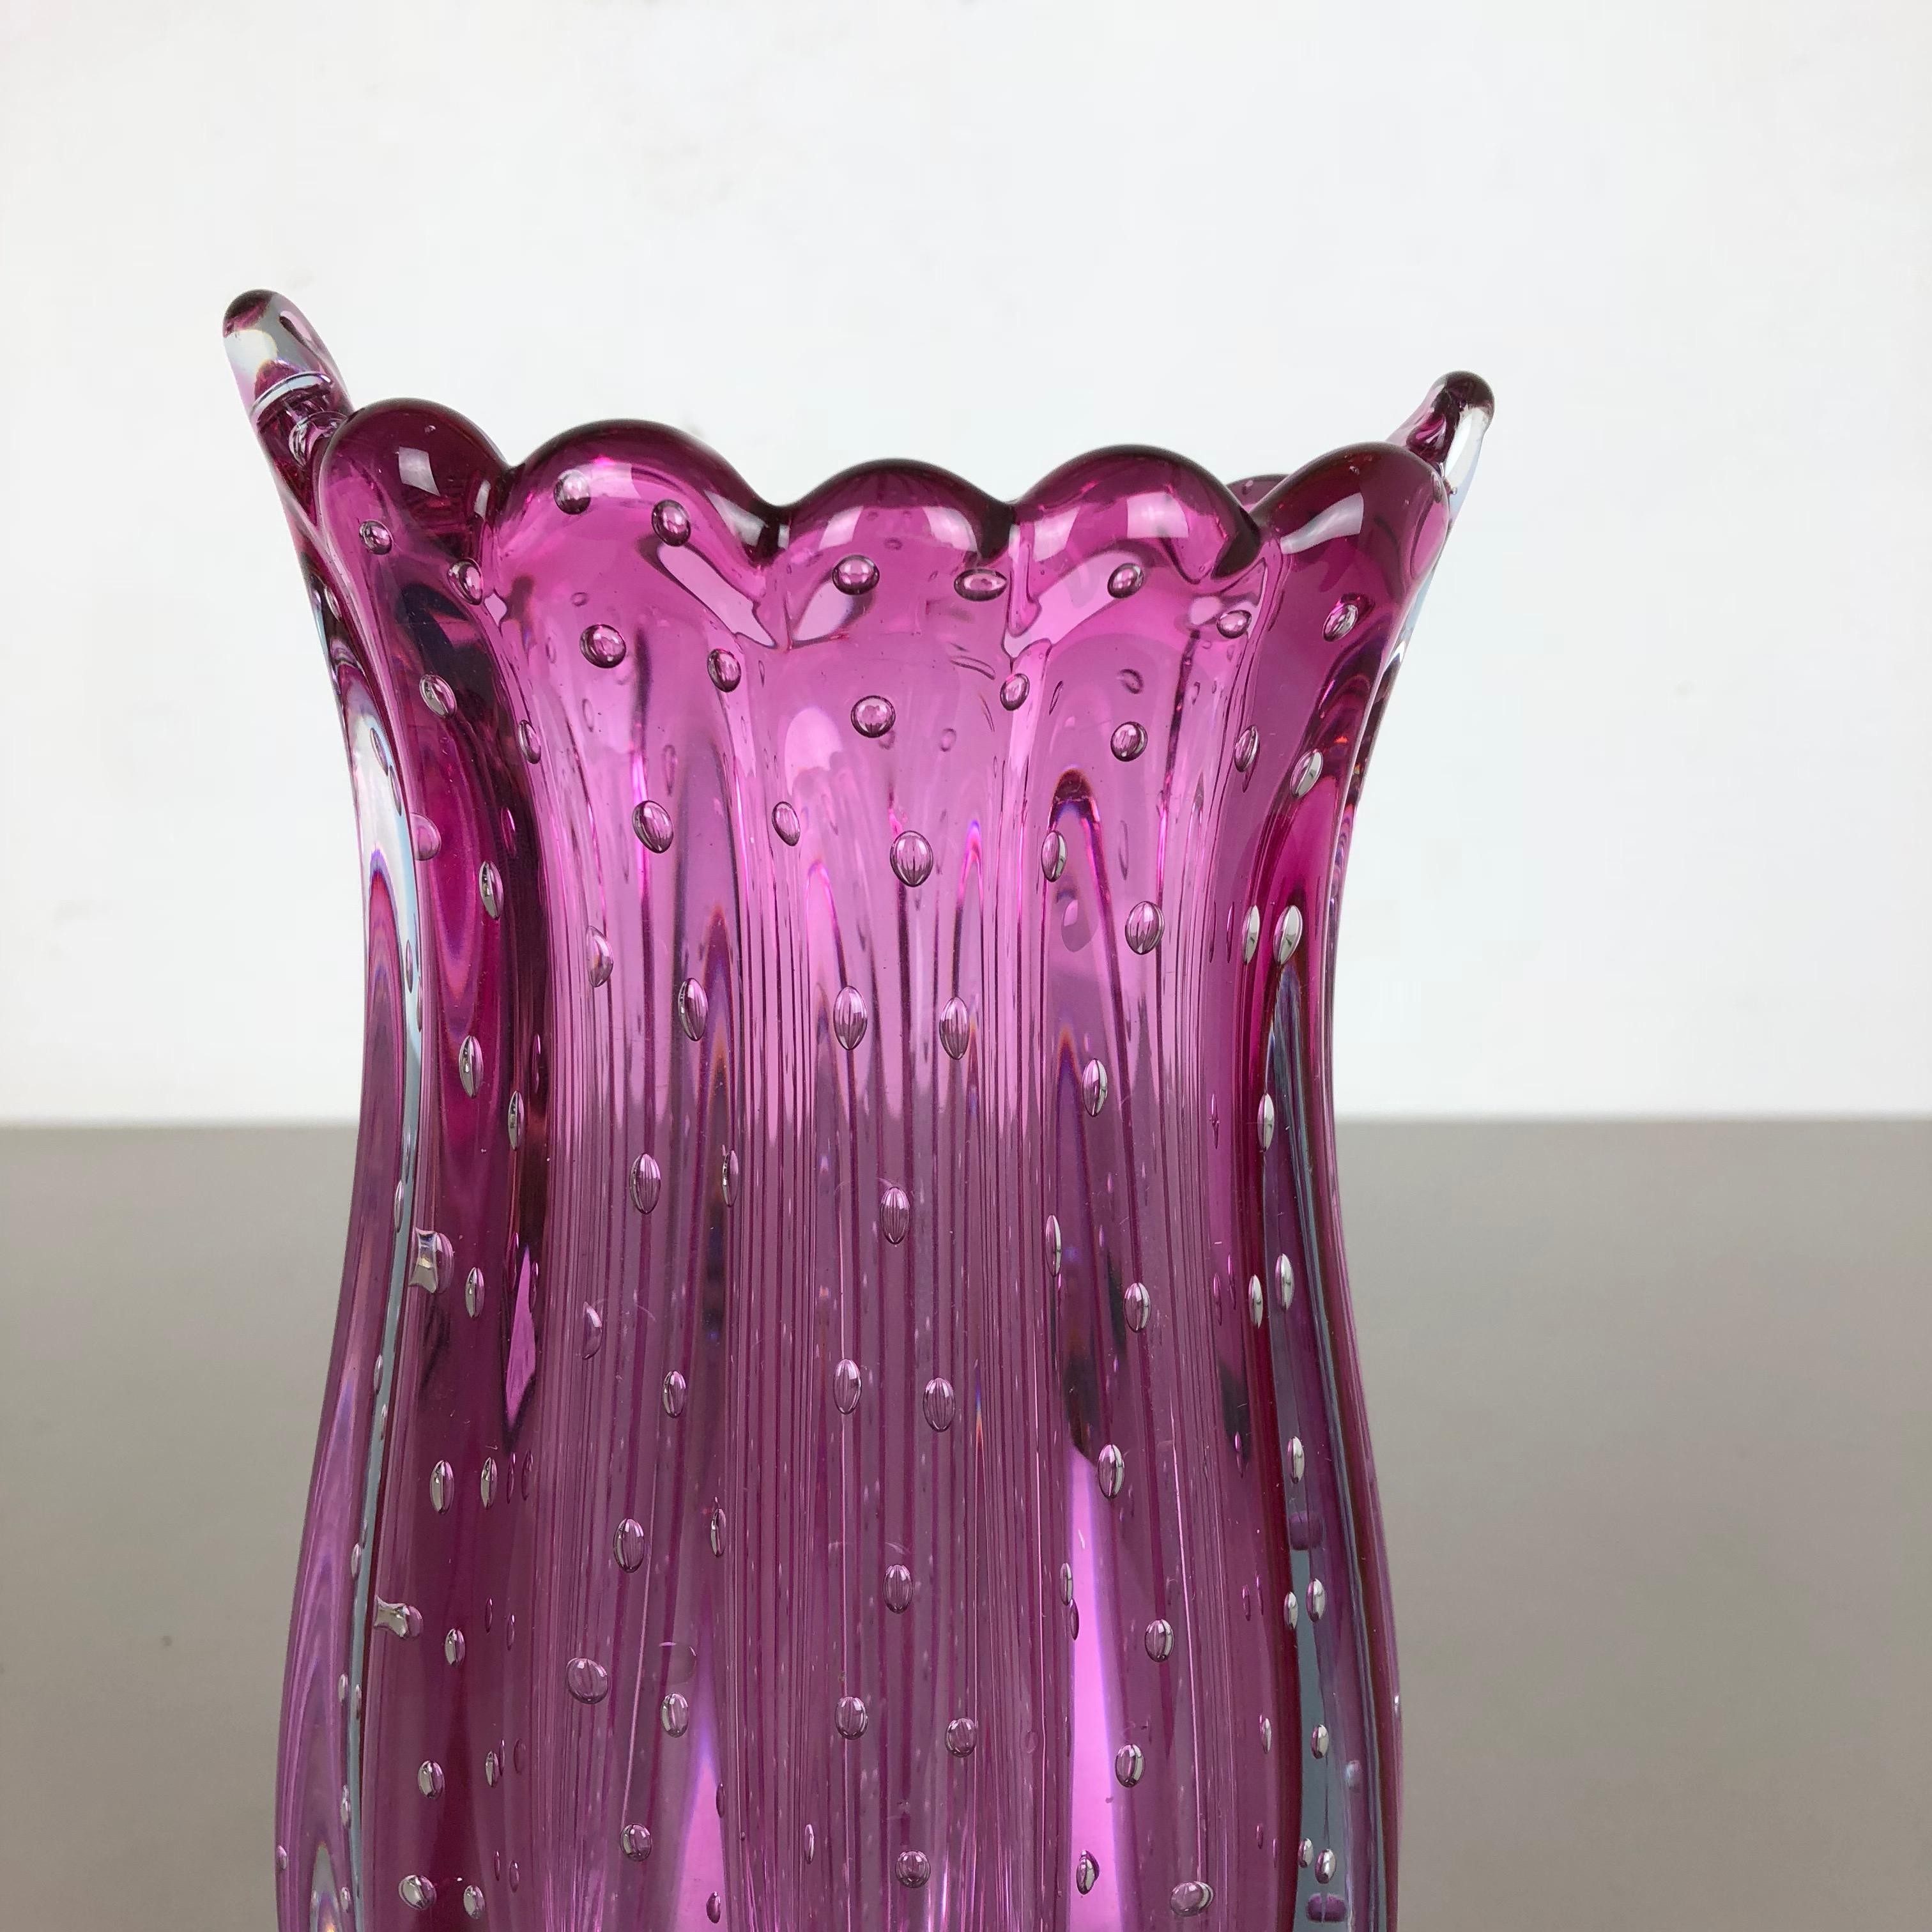 Mid-Century Modern Unique Bullicante Murano Glass Vase by Archimede Seguso, Italy, 1970s